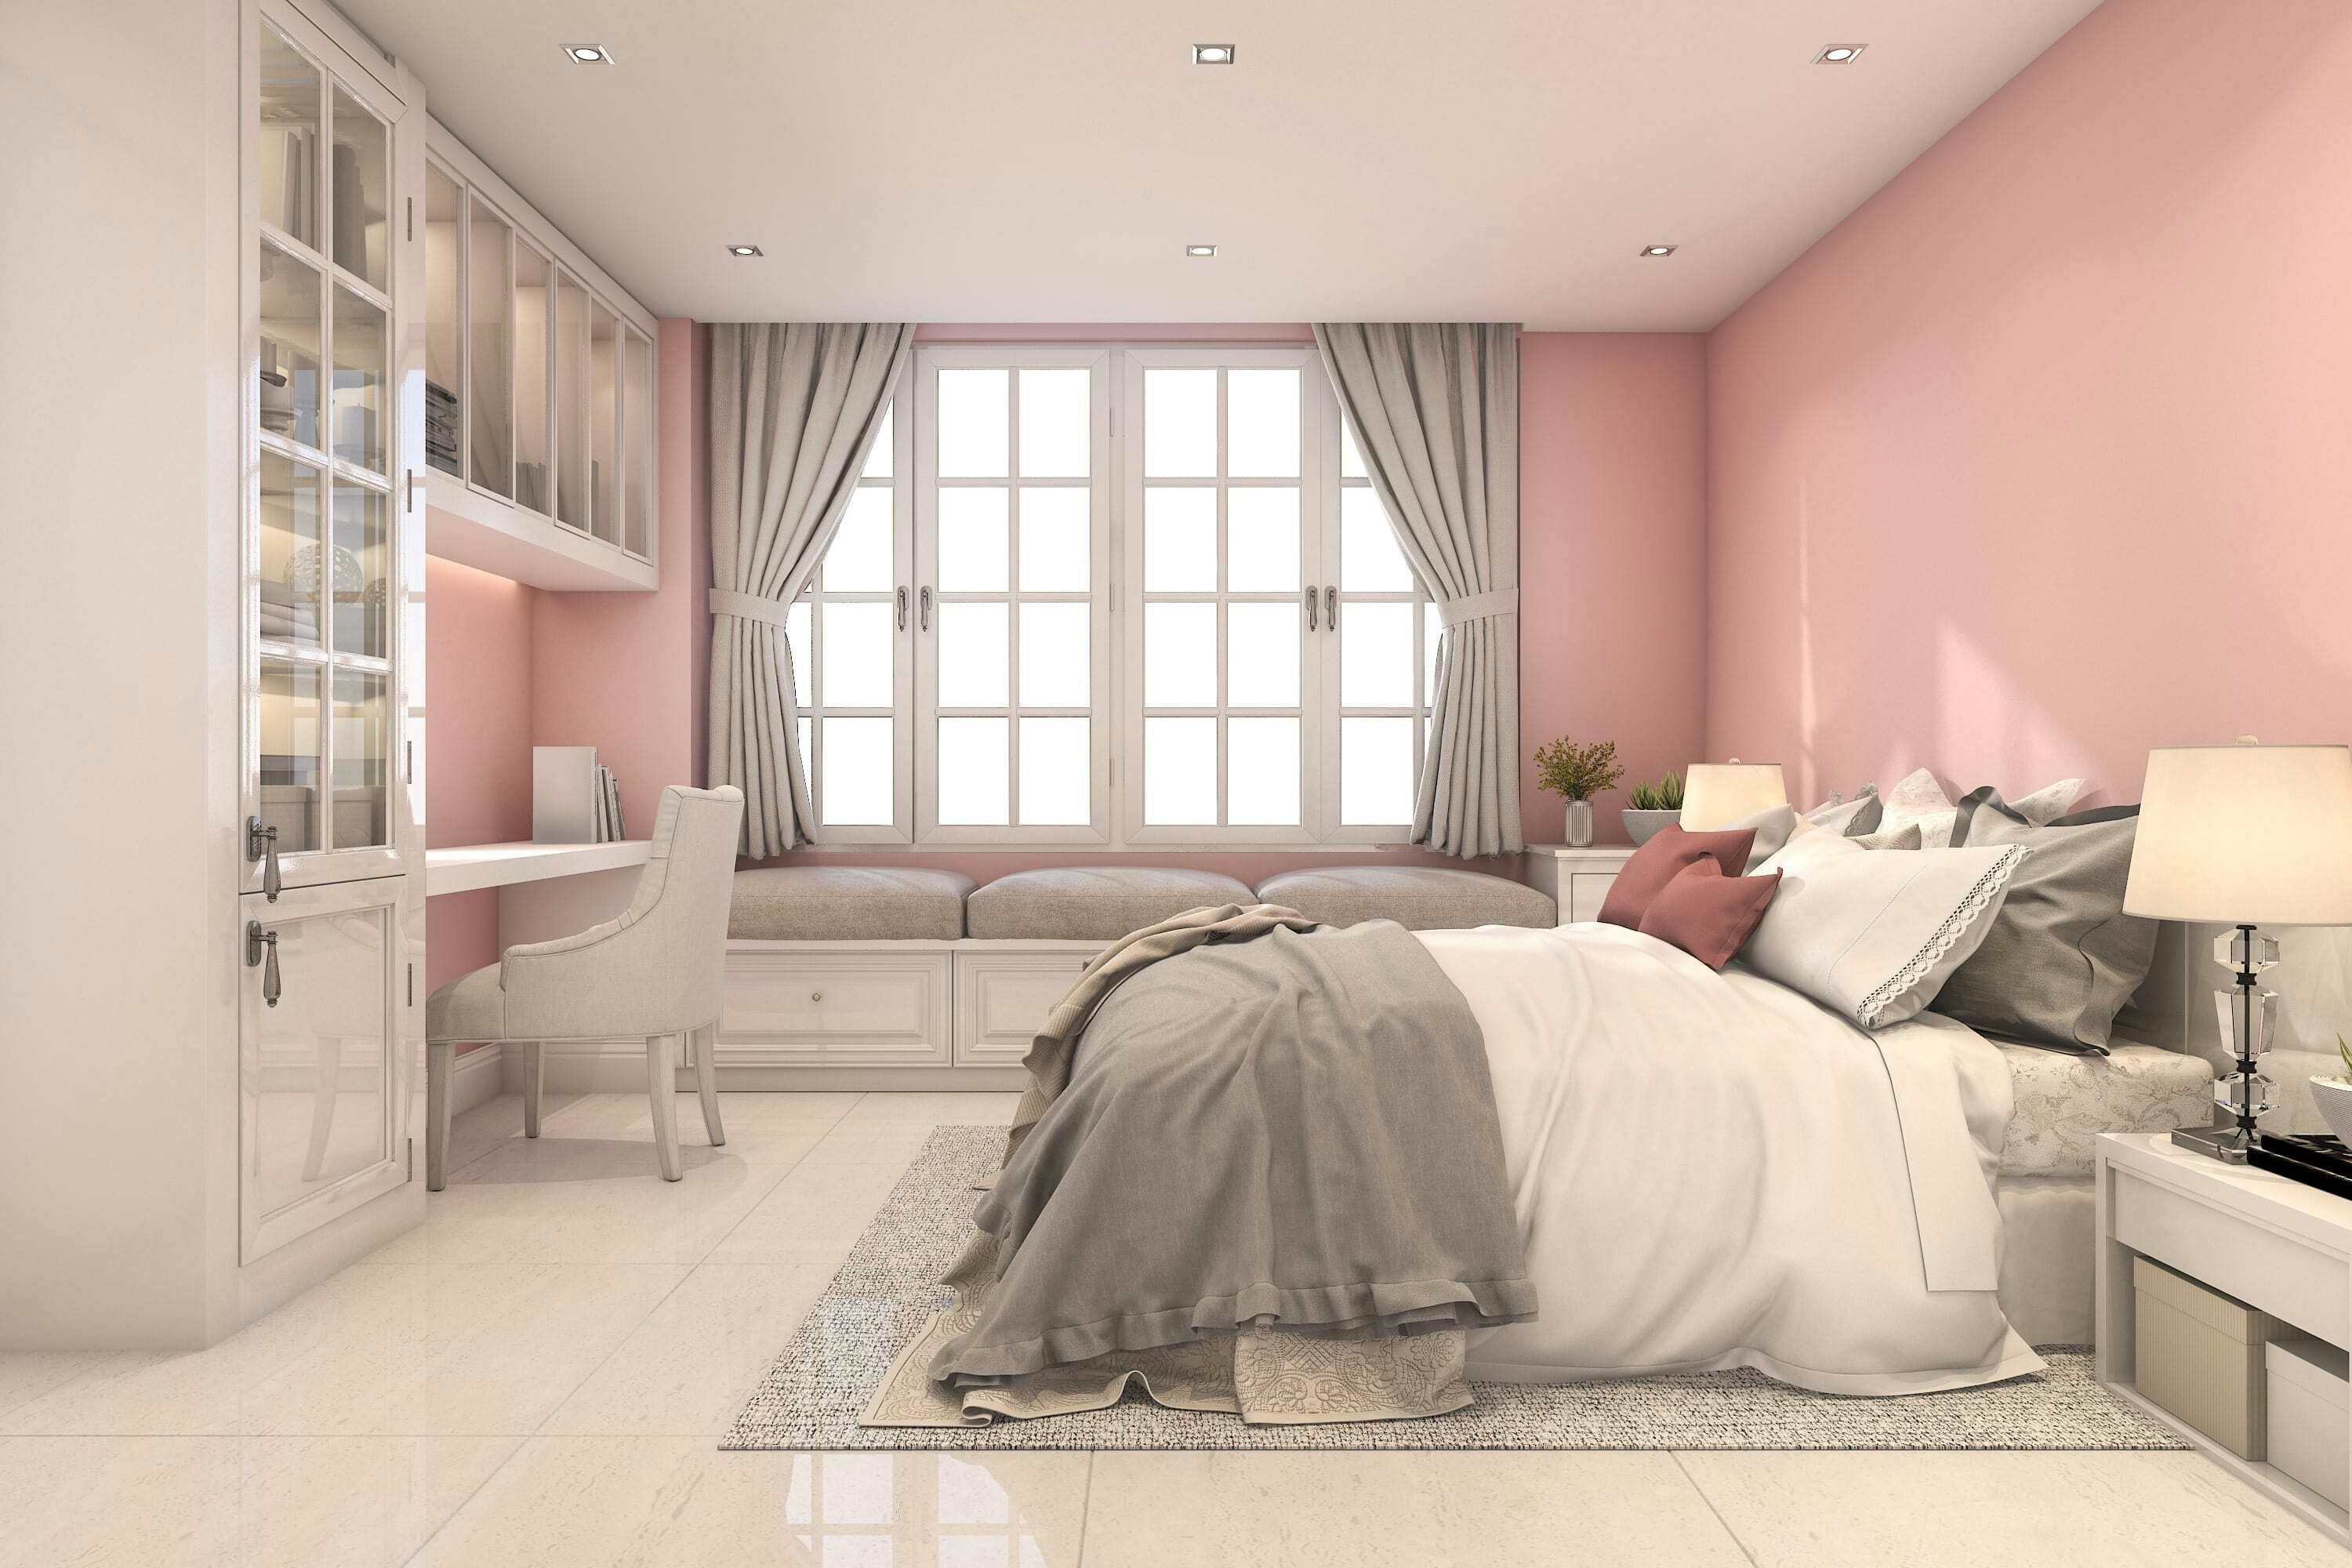 El color rosa pastel es perfecto para las habitaciones más infantiles de la casa.